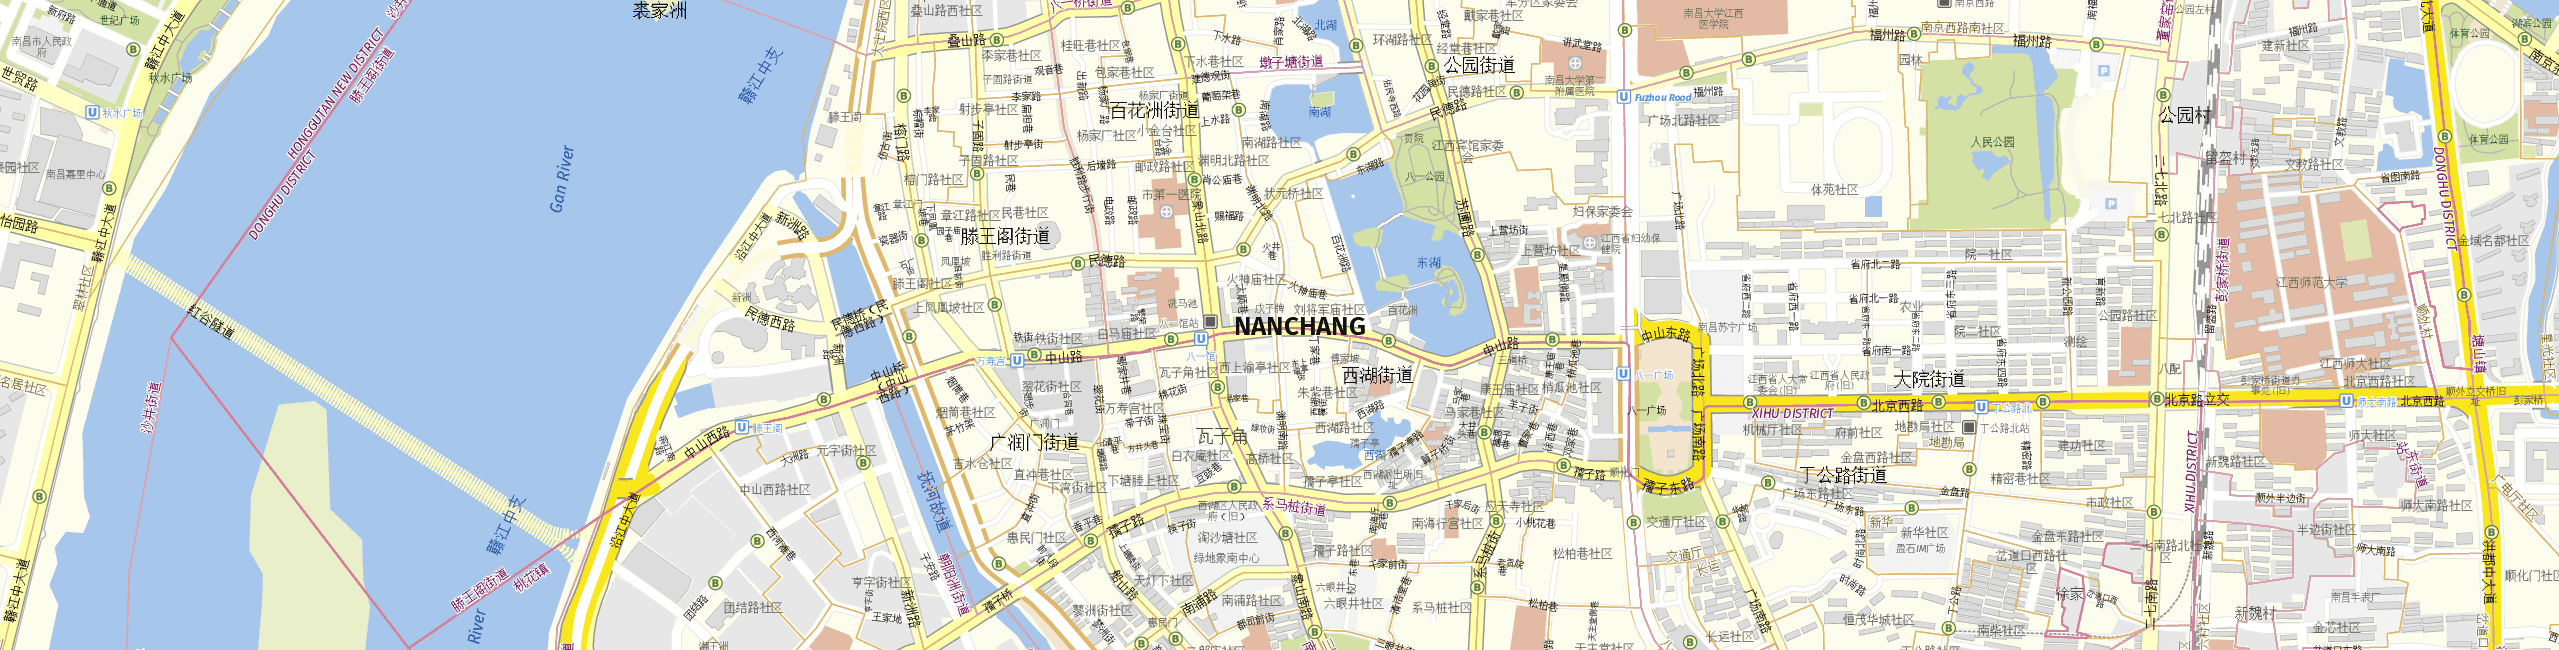 Stadtplan Nanchang zum Downloaden.